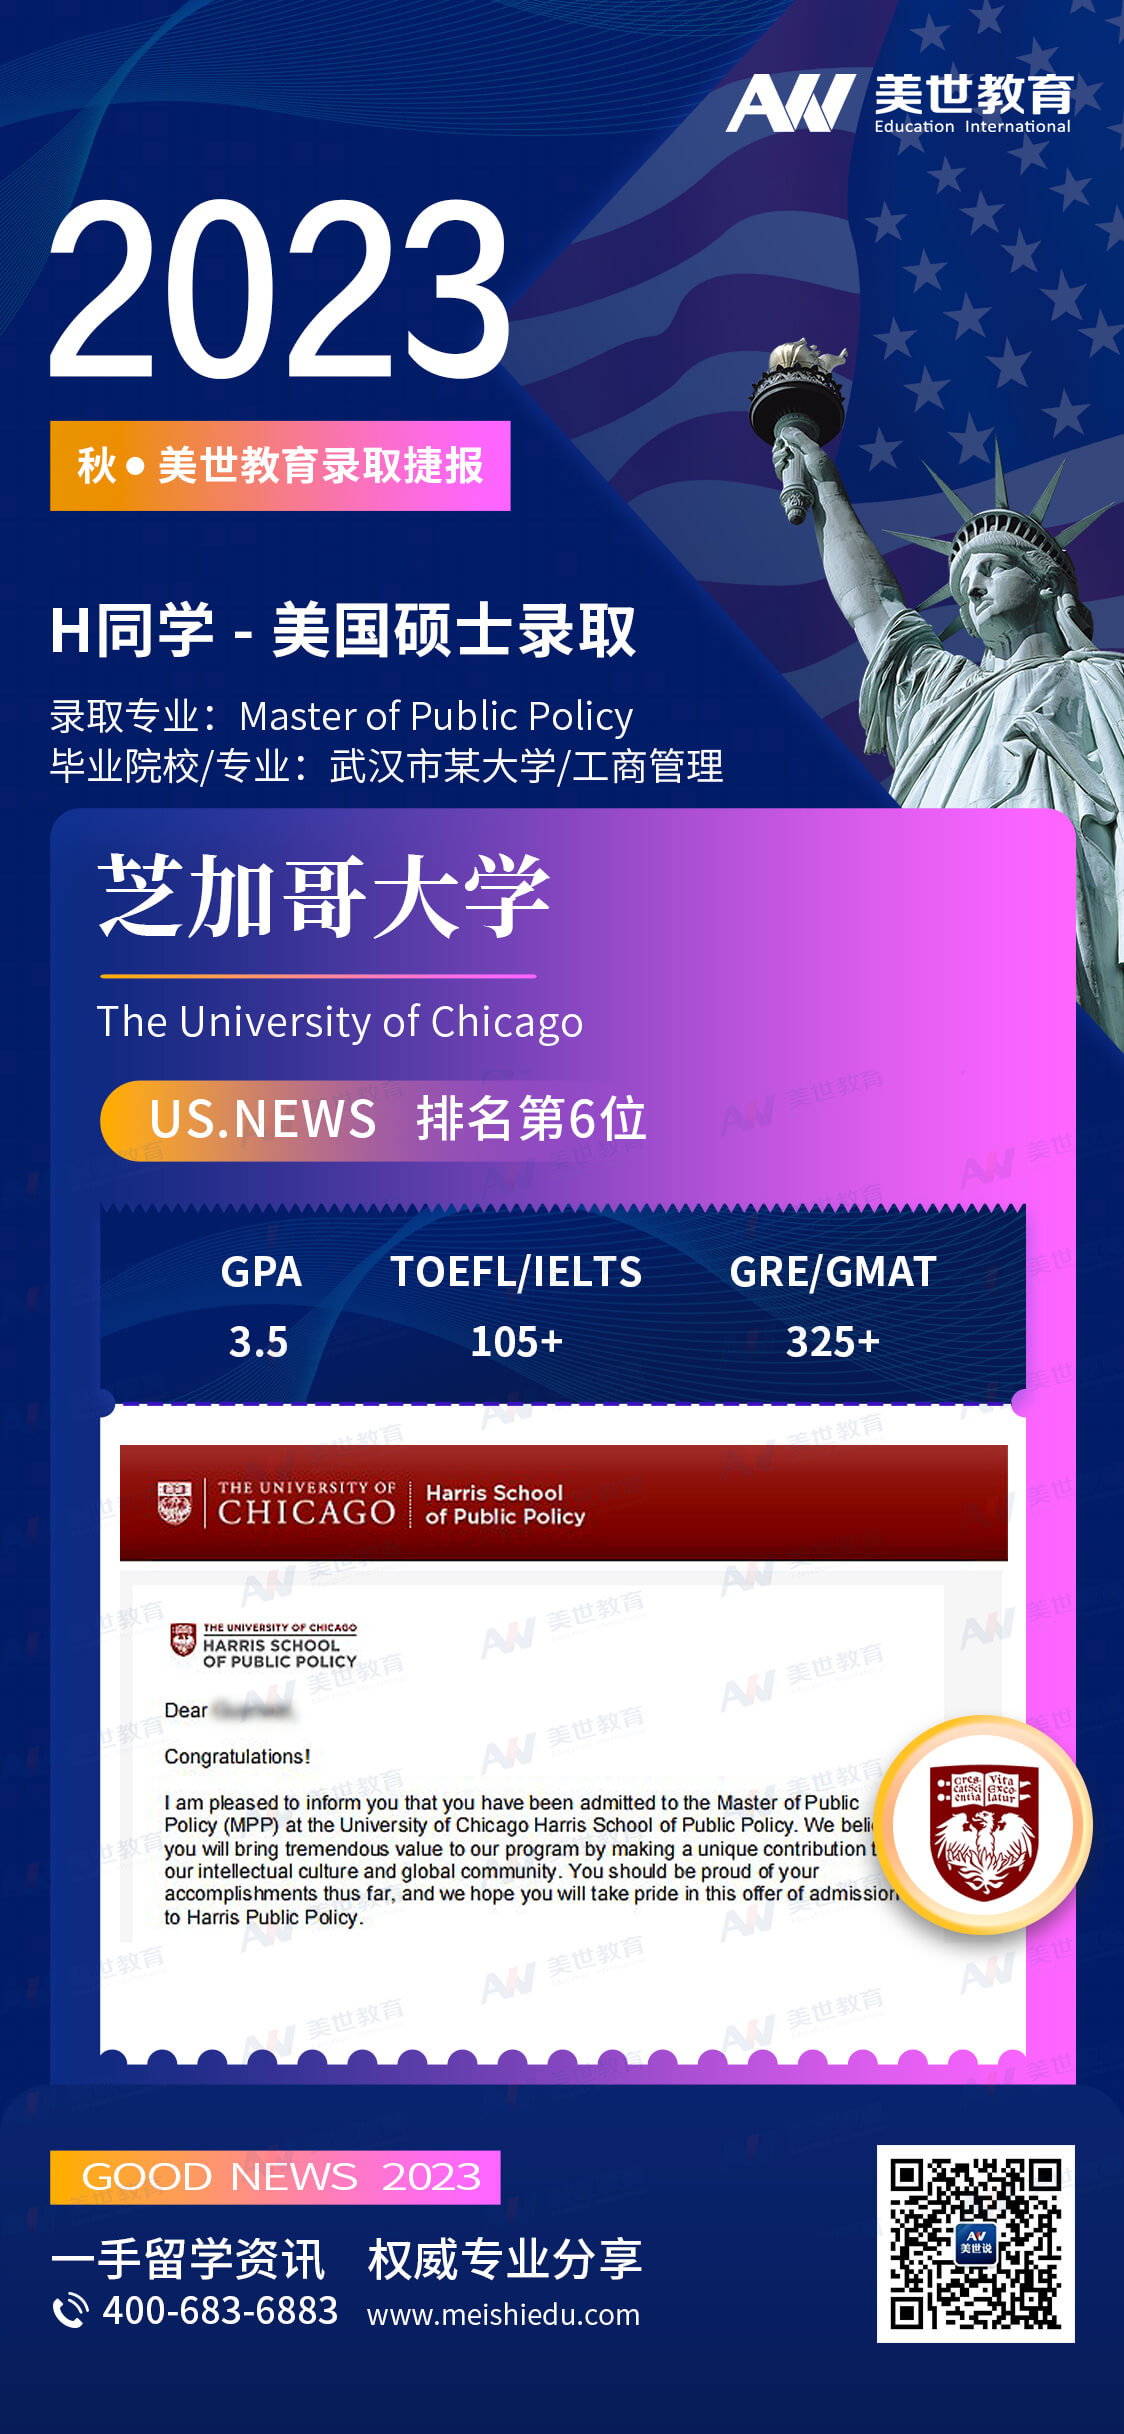 黄冠伟-芝加哥大学-公共政策 (1).jpg